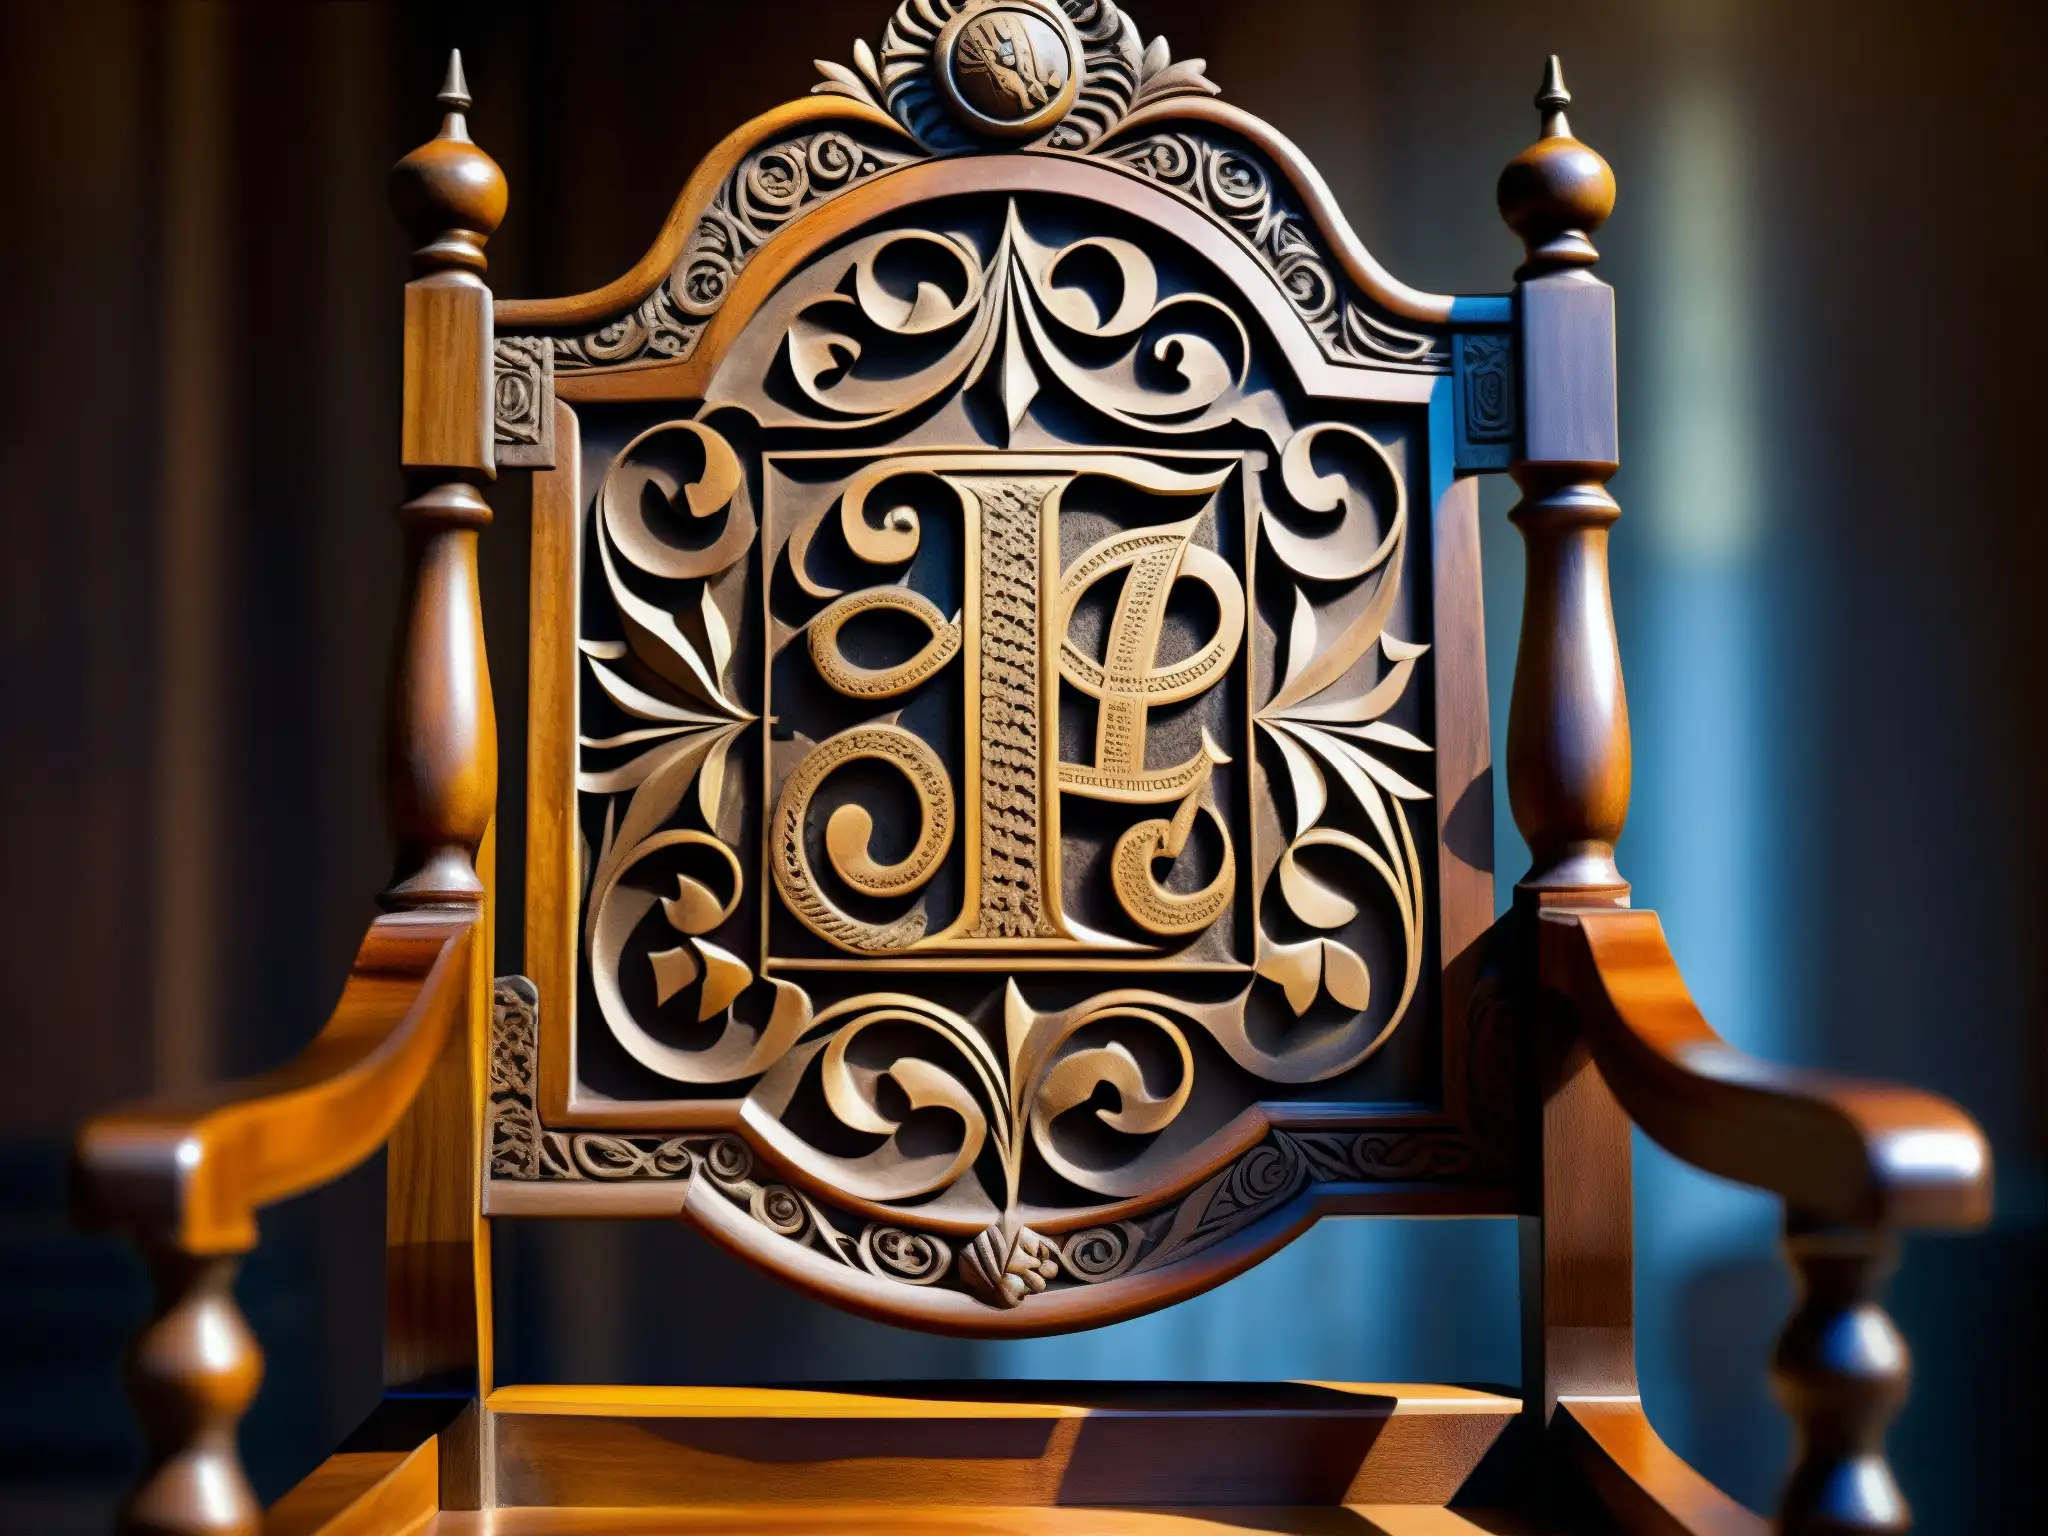 Una silla presidencial de madera tallada, con símbolos y detalles intrincados, en una habitación tenue que realza su importancia histórica